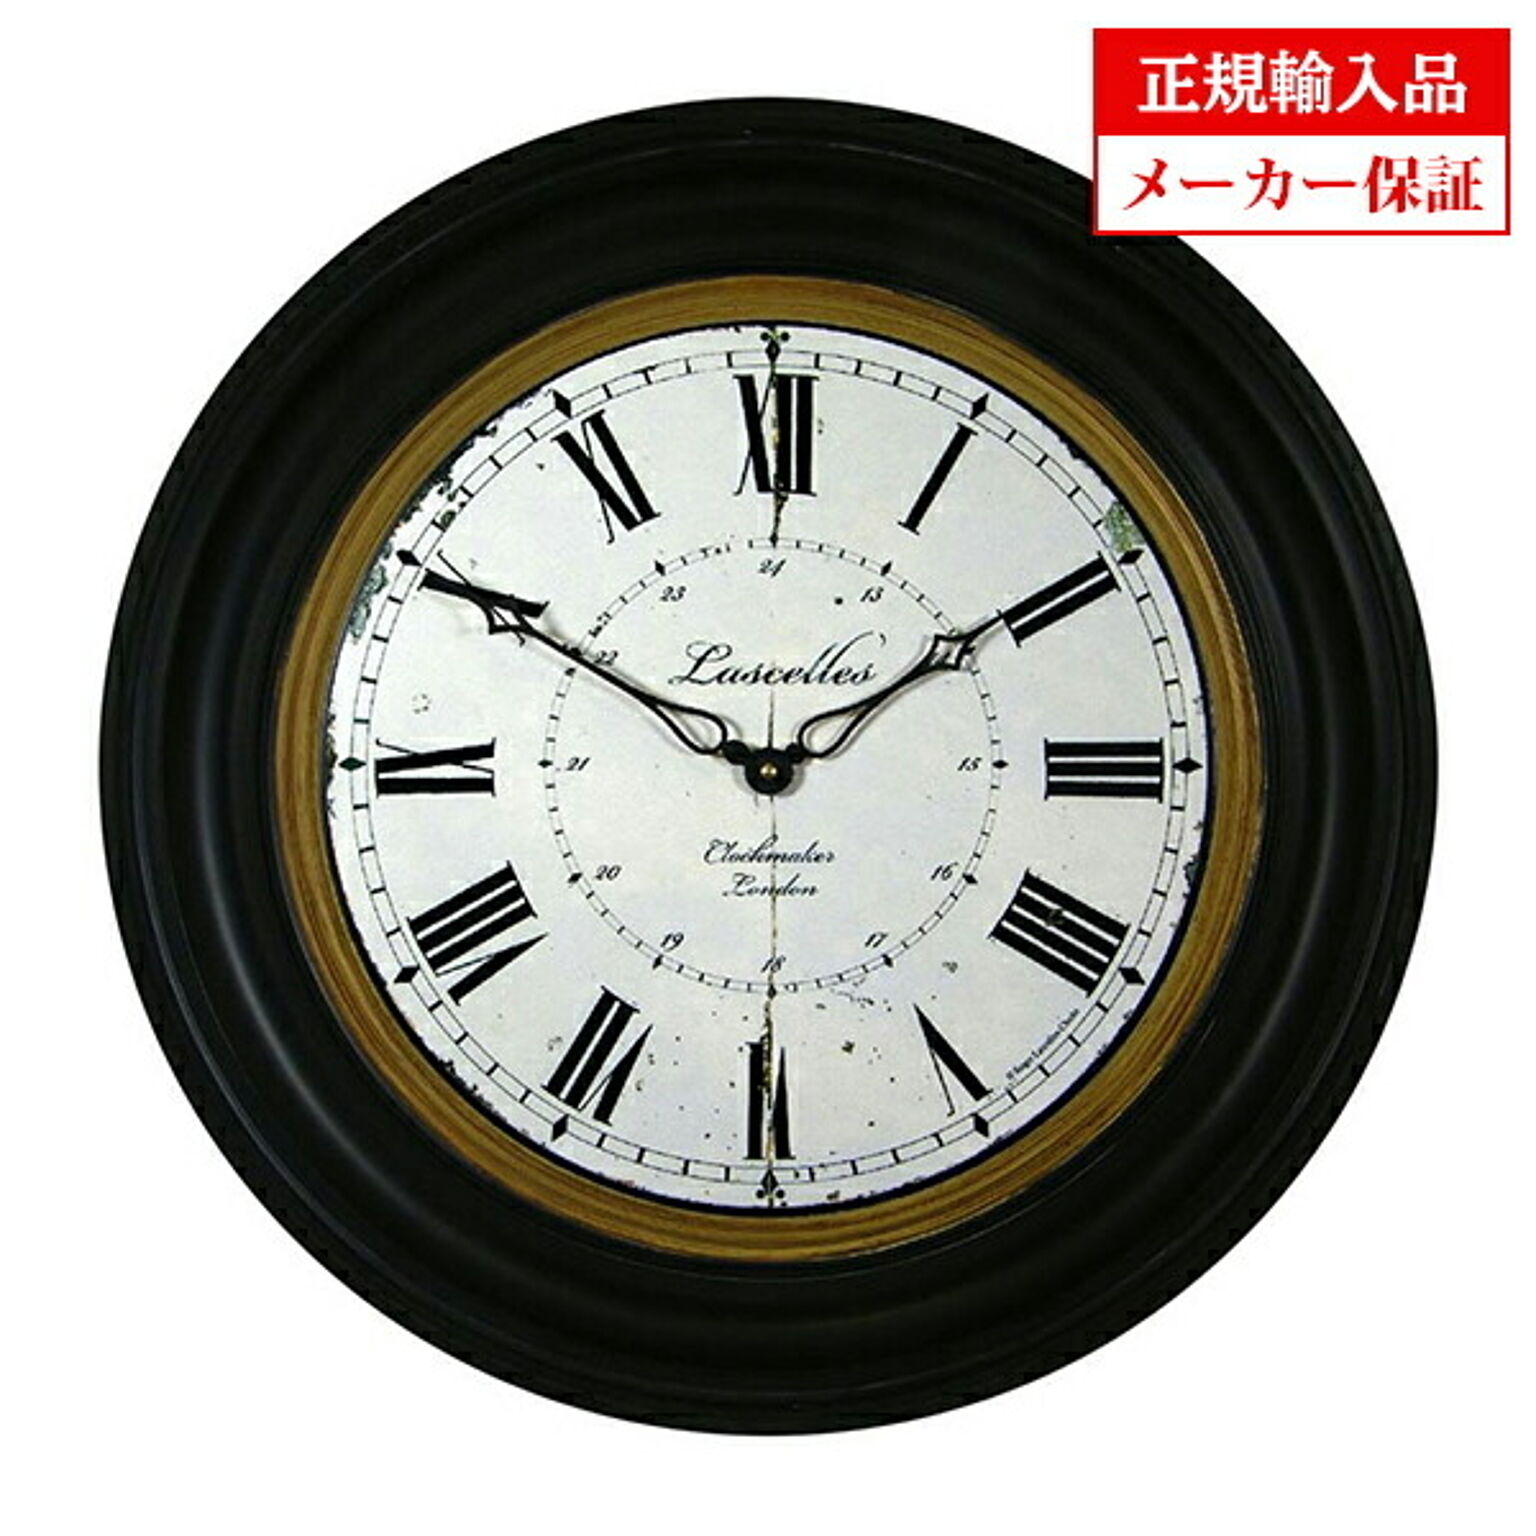 イギリス ロジャーラッセル 掛け時計 [RWB/CLOCKMAKER] ROGER LASCELLES Large clocks ラージクロック 正規輸入品